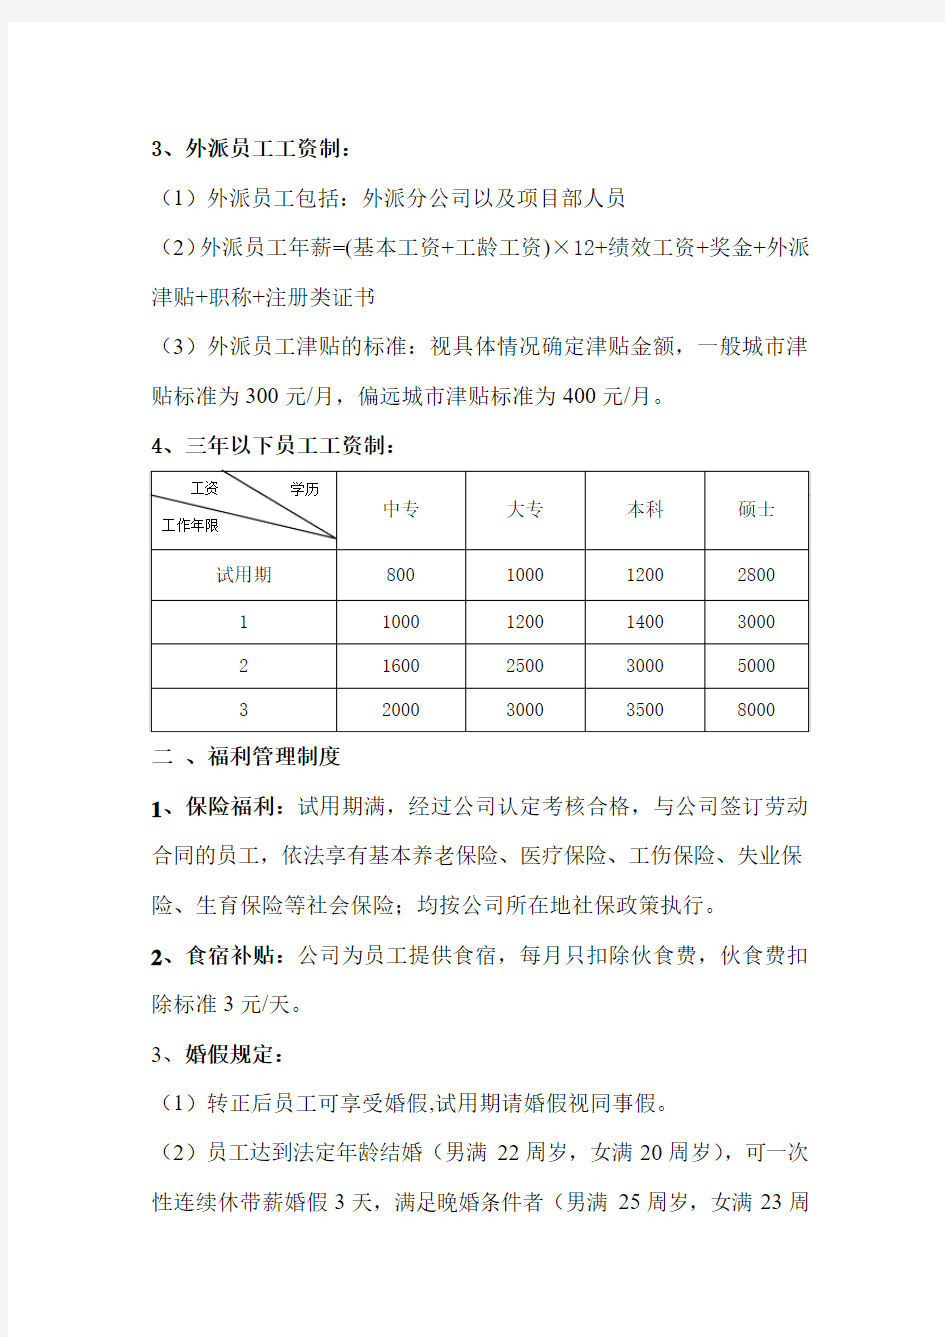 2015年华北建设薪酬制度